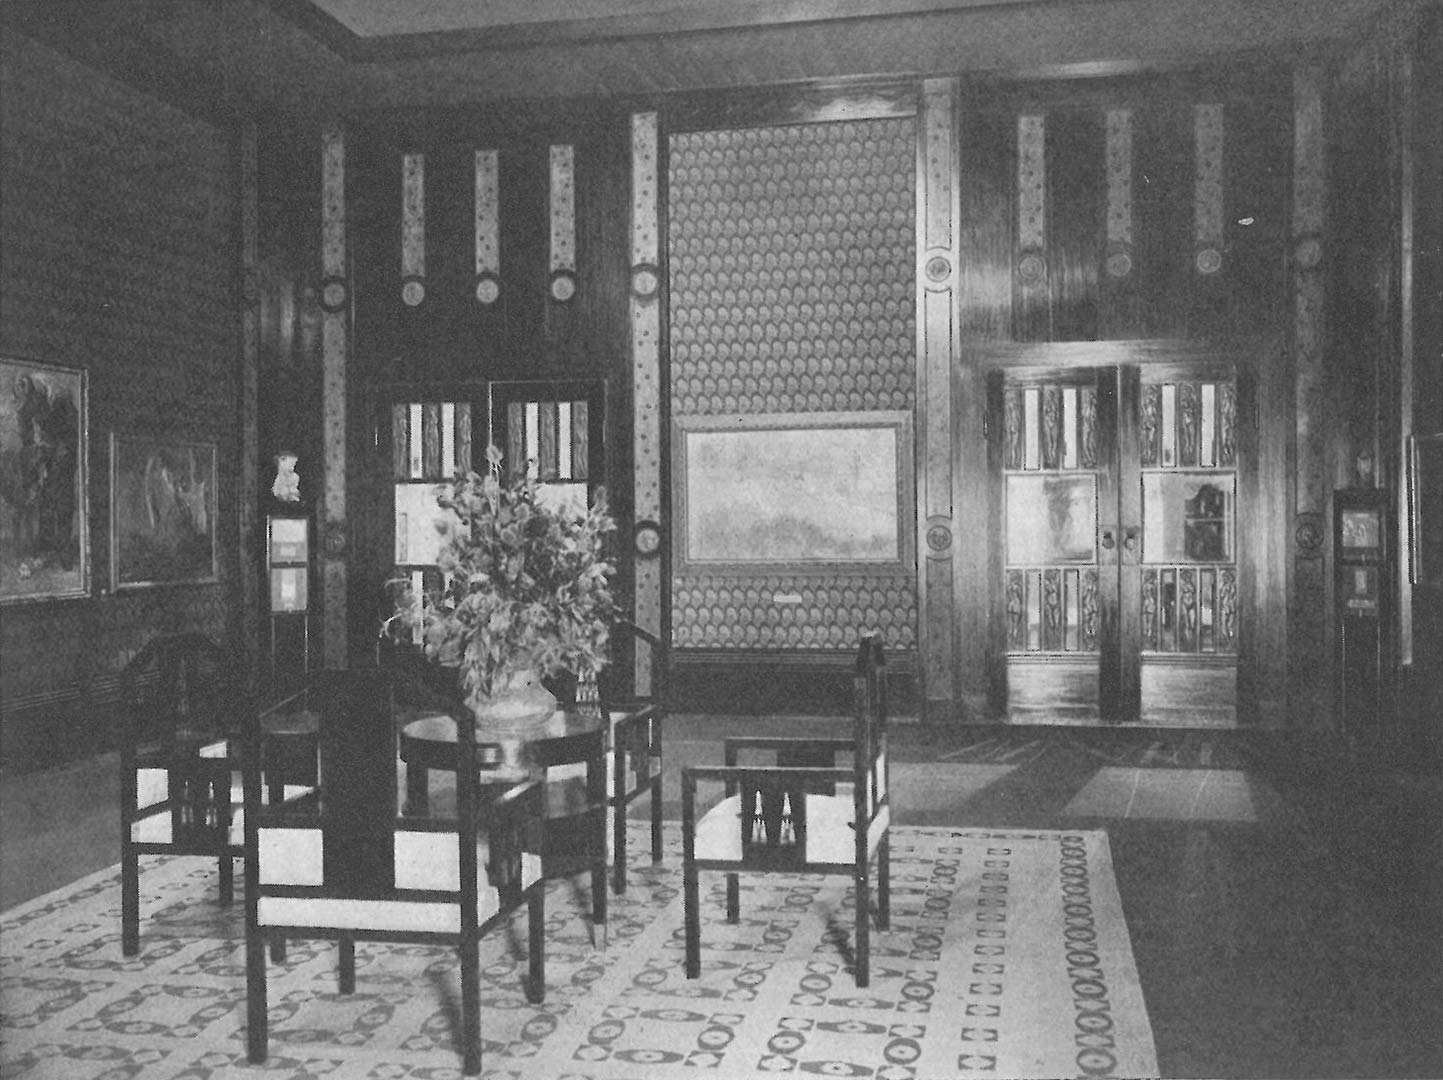 Hagenbund interior exhibition in 1905